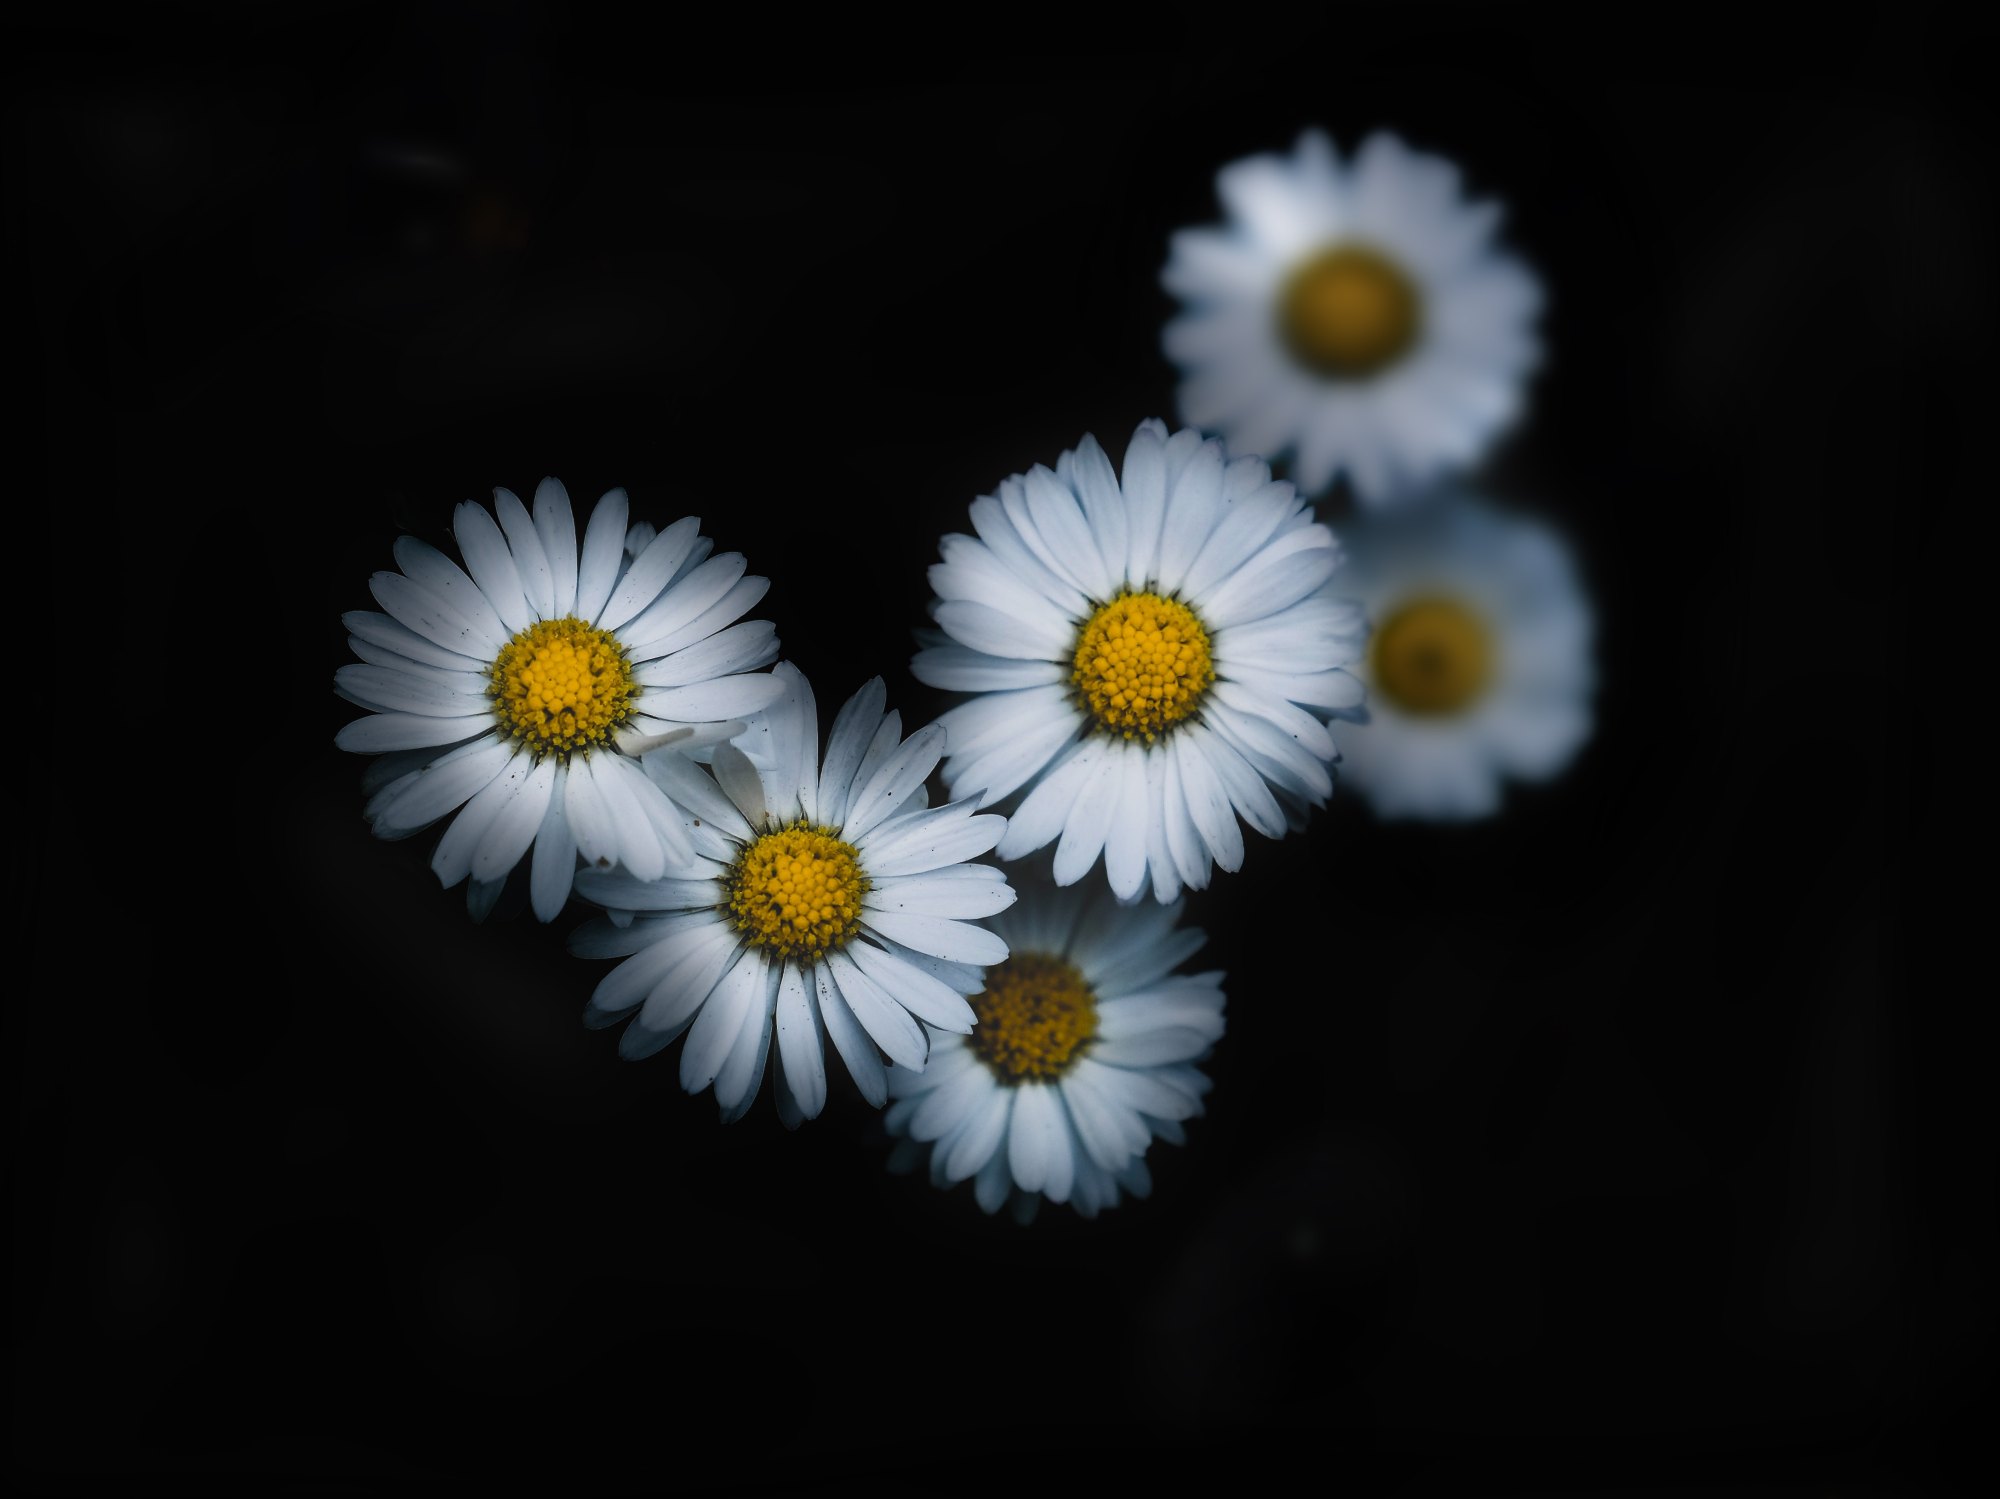 Hình ảnh những bông hoa cúc trắng nền đen